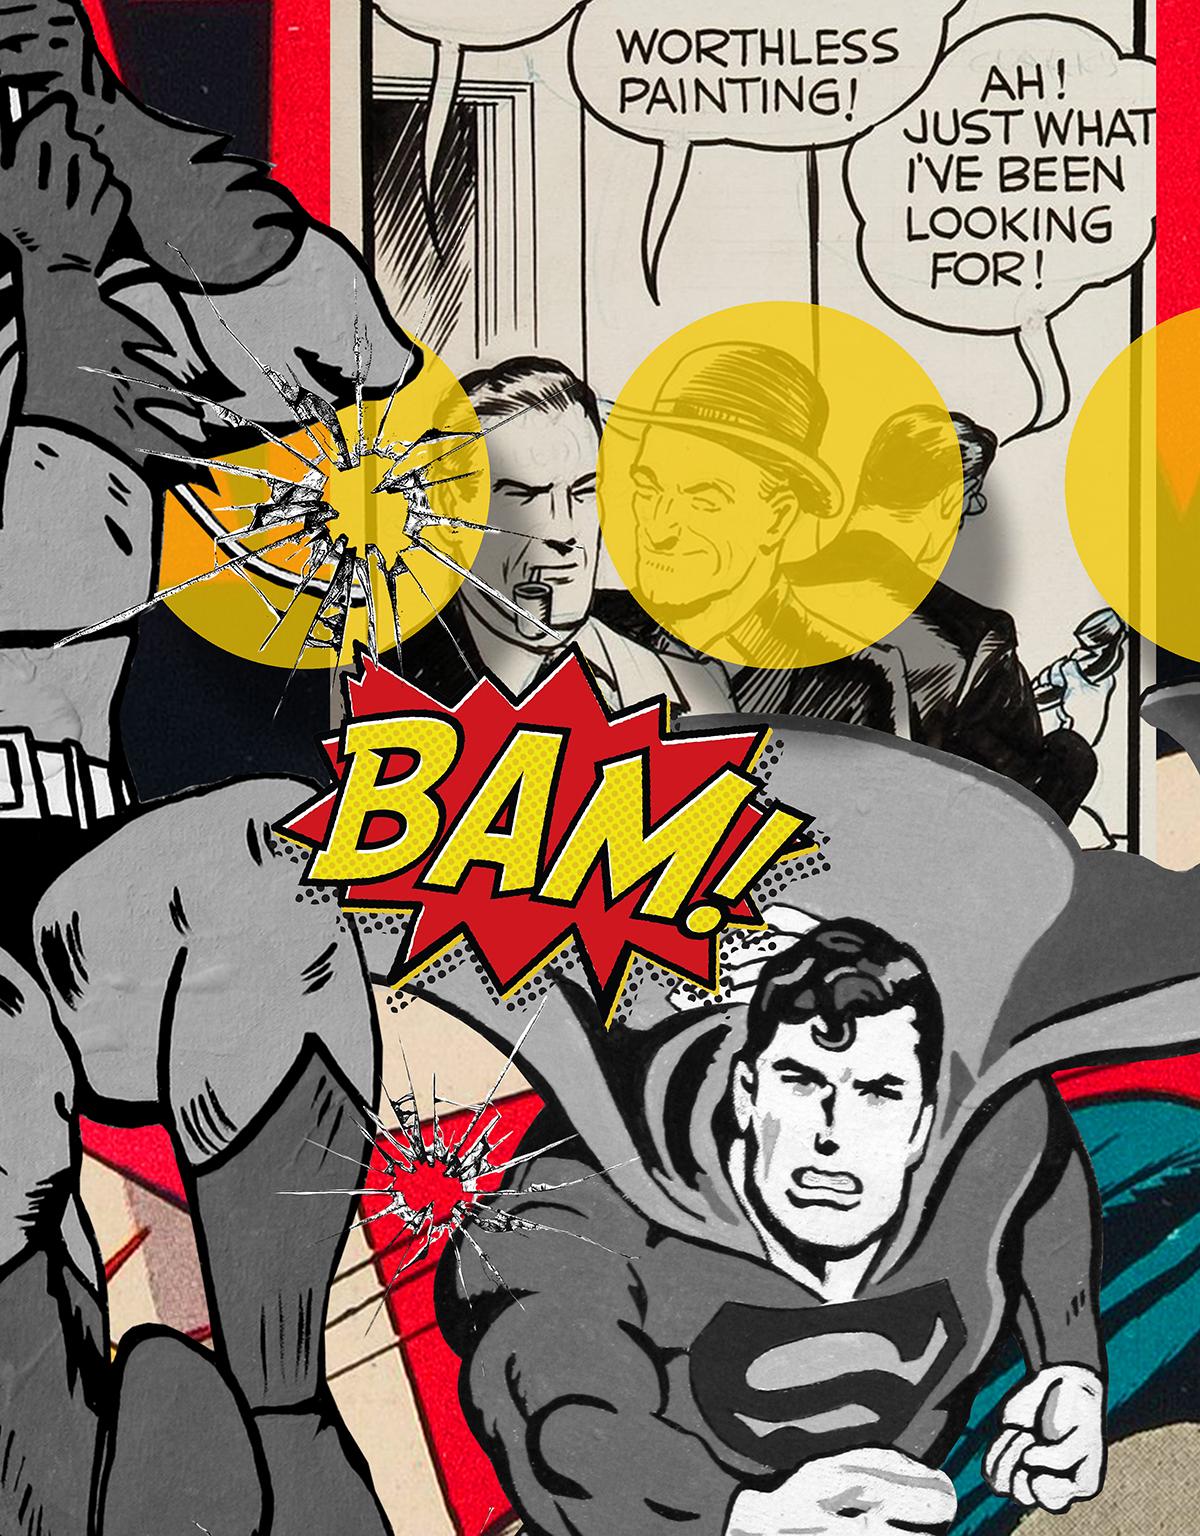 Un tableau sans valeur est volé et Batman et Robin font appel à Flash et Superman pour aider à capturer le voleur pendant que 